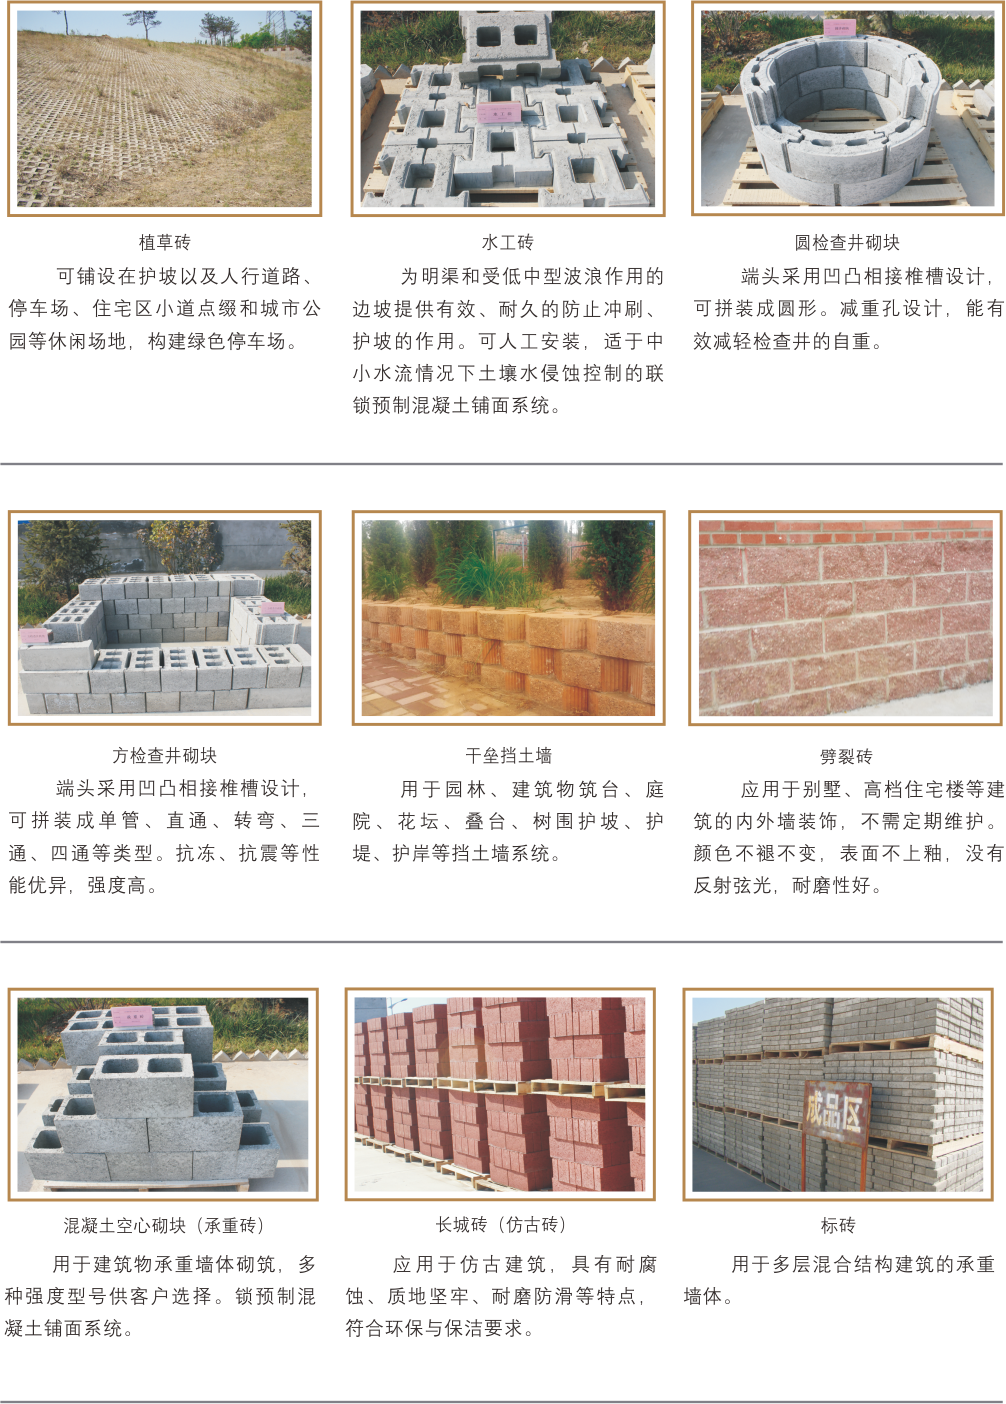 再生混凝土砖/混凝土砌块系列(图2)